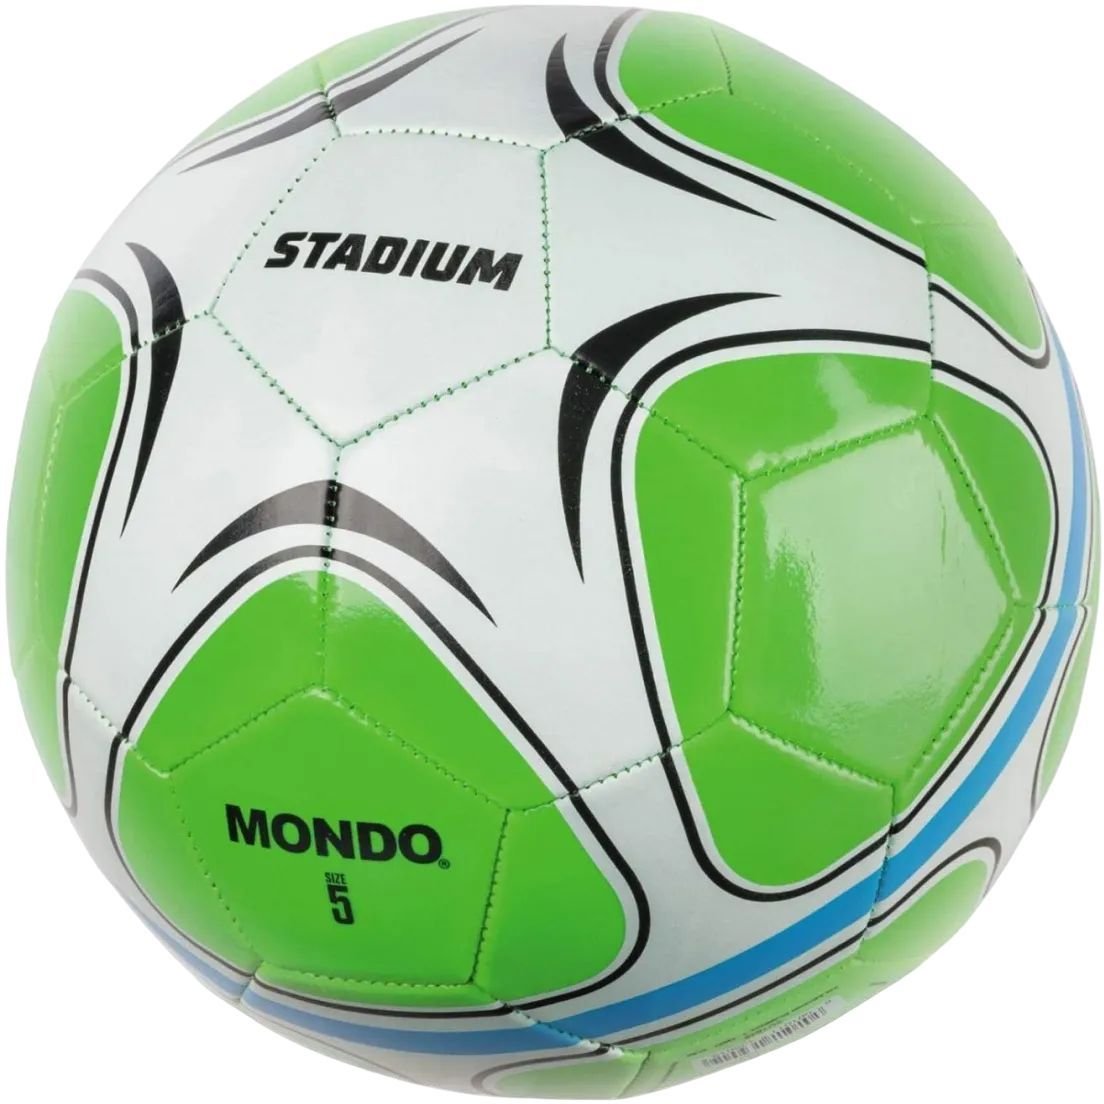 Футбольный мяч Mondo Stadium, размер 5, зеленый (13901) - фото 1